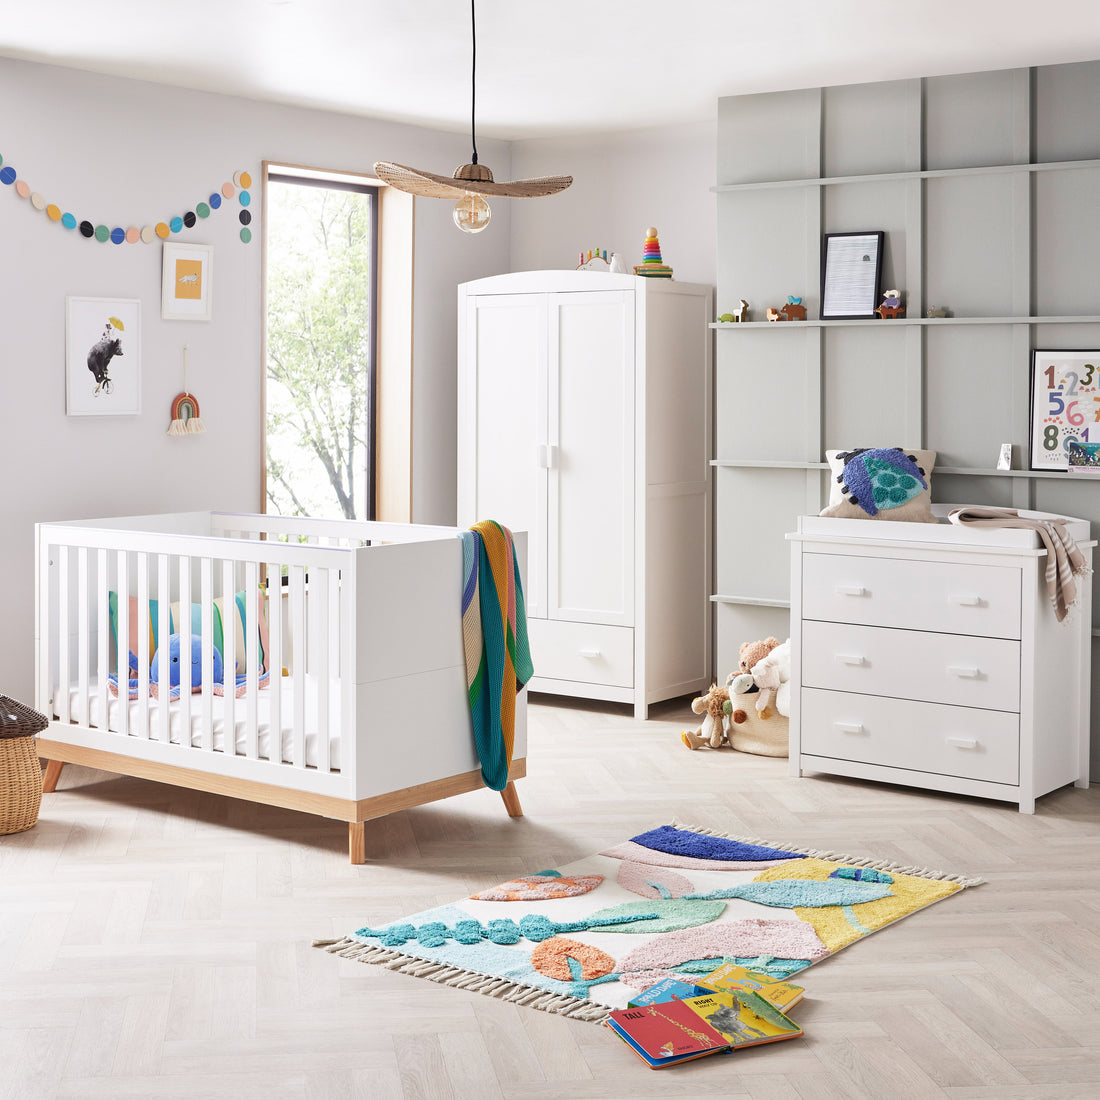 Luxury Baby Nursery Furniture: Pinnacle of Elegance and Comfort